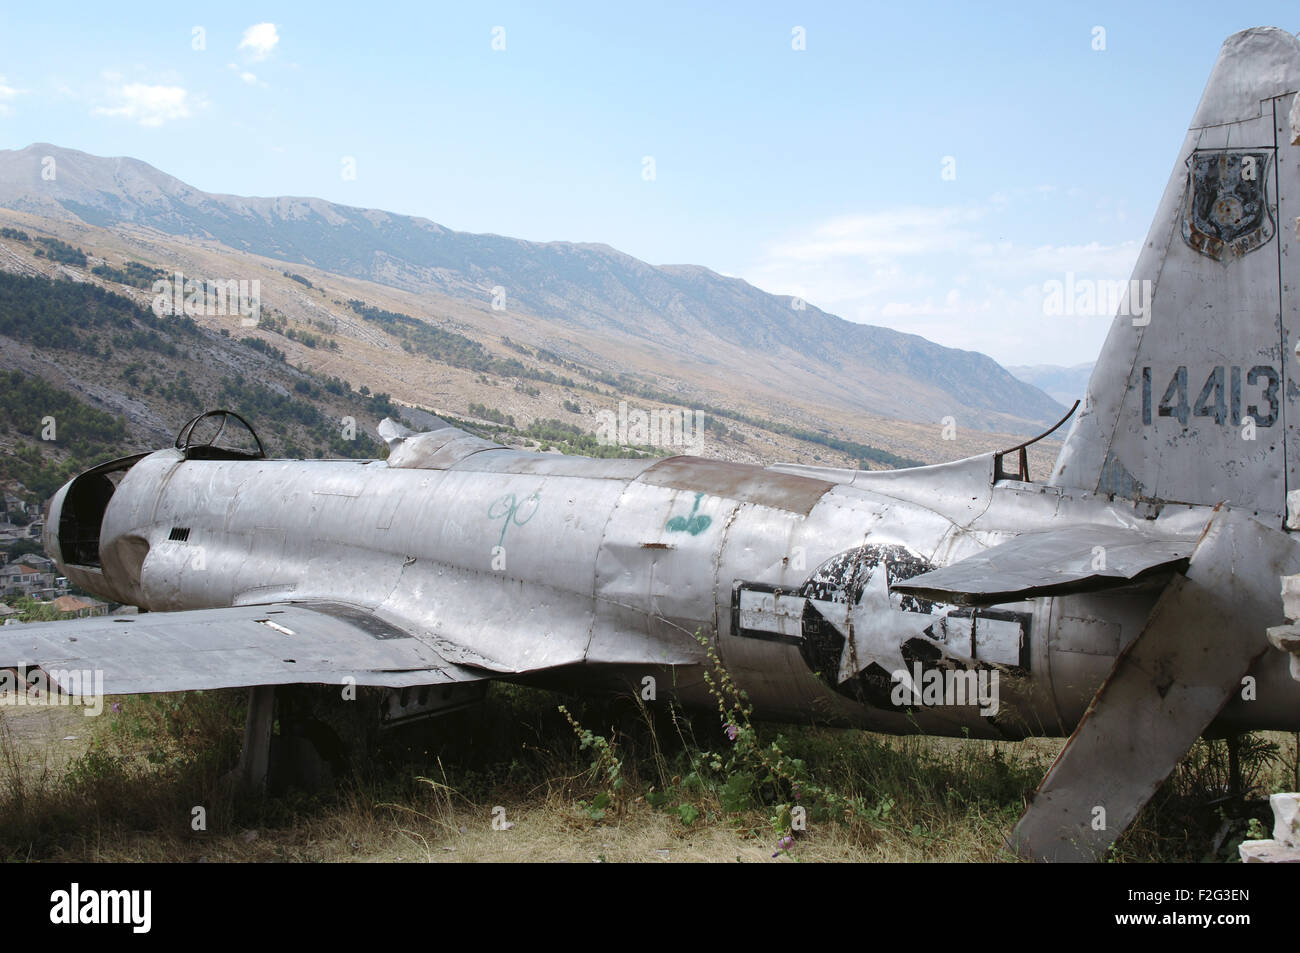 Amerikanische Luftwaffe Flugzeug landete in Albanien im Jahr 1957 während des Kalten Krieges. Gjirokaster Burg. Republik von Albanien. Stockfoto